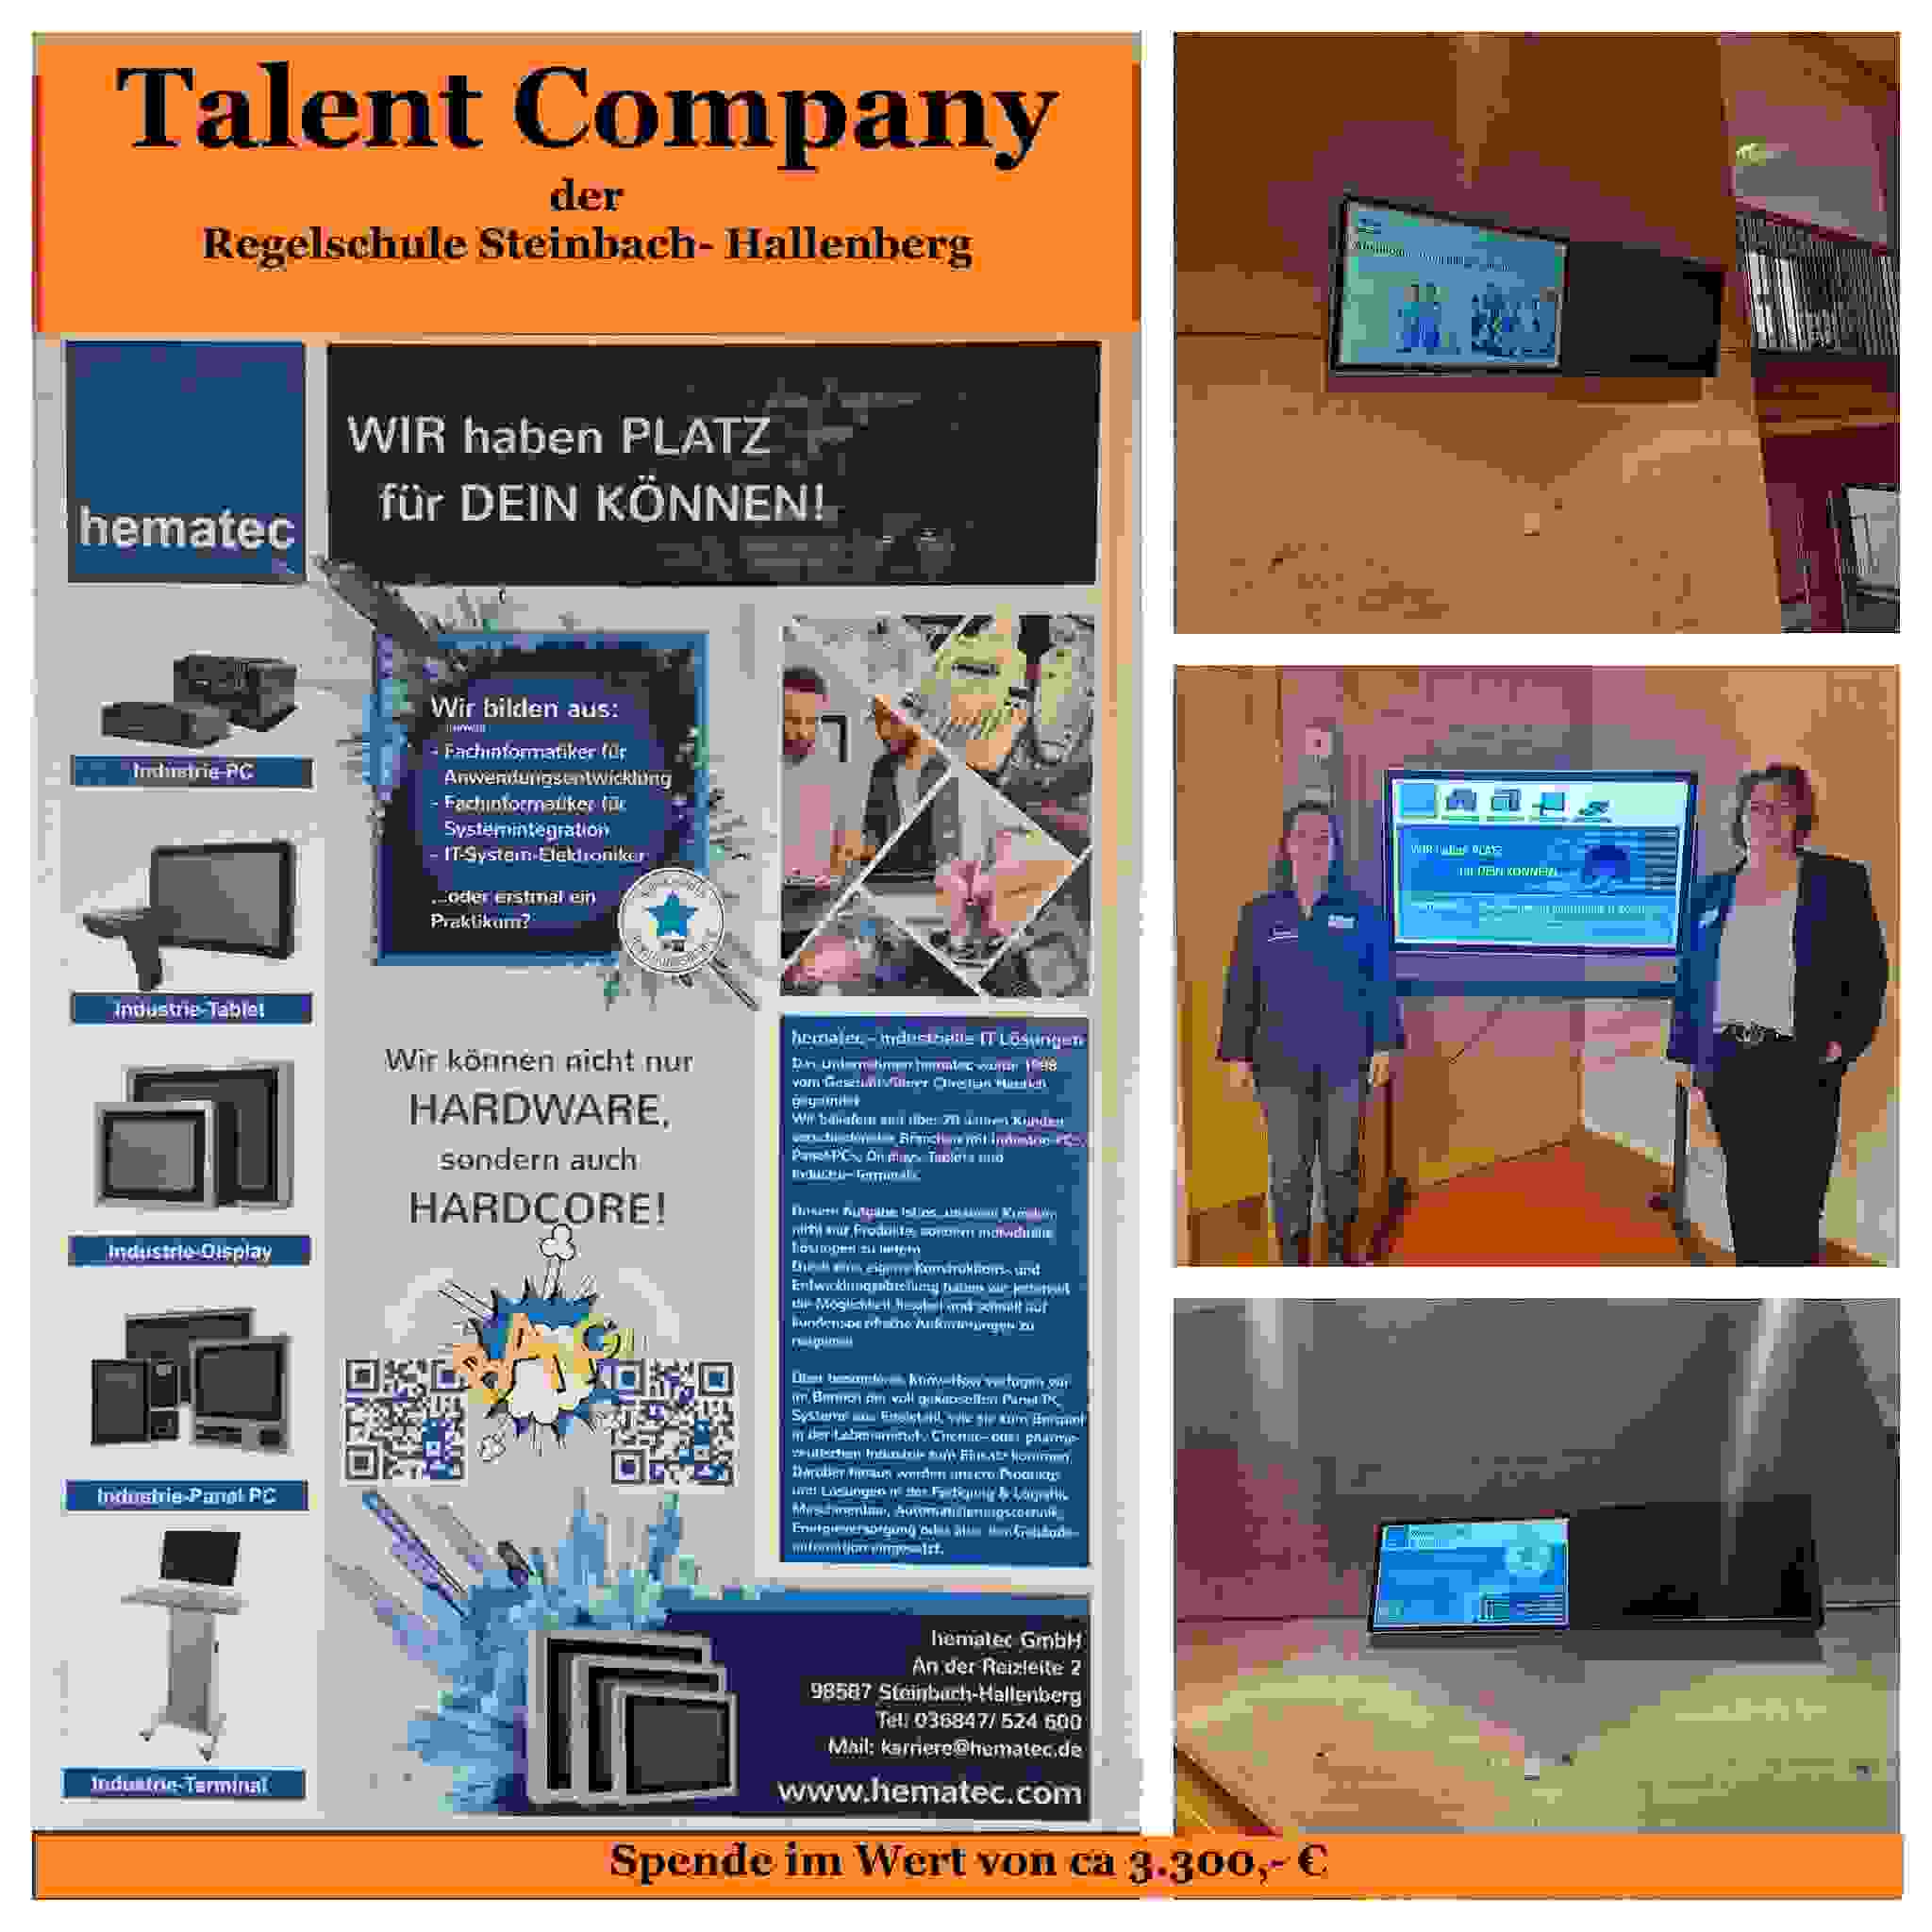 hematec Talent Company